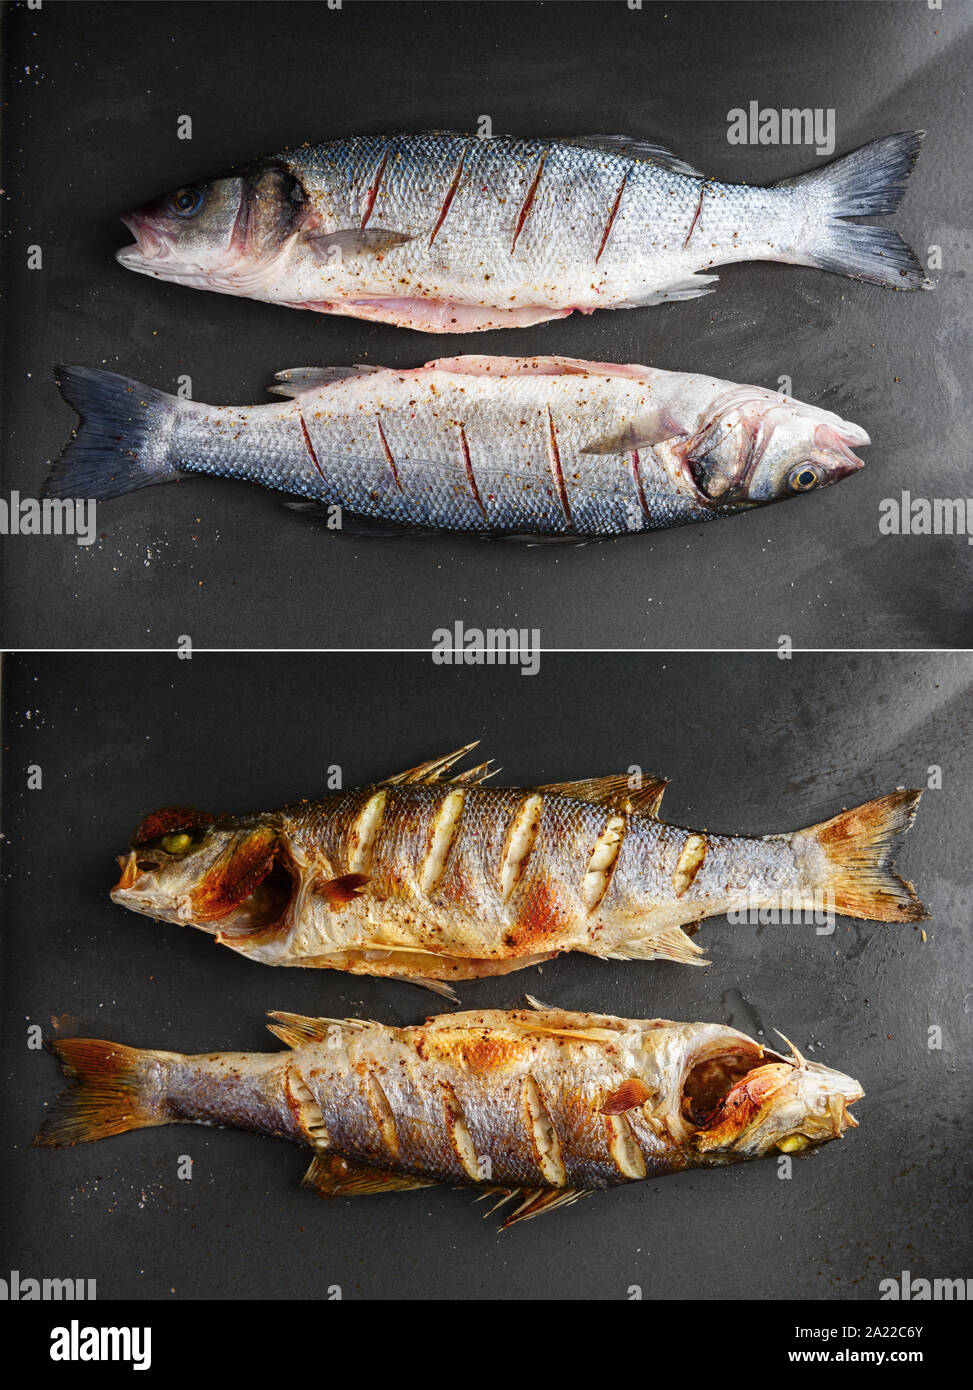 Materie e branzino grigliato pesce sulla piastra nera. Prima e dopo la preparazione. Fotografia di cibo Foto Stock